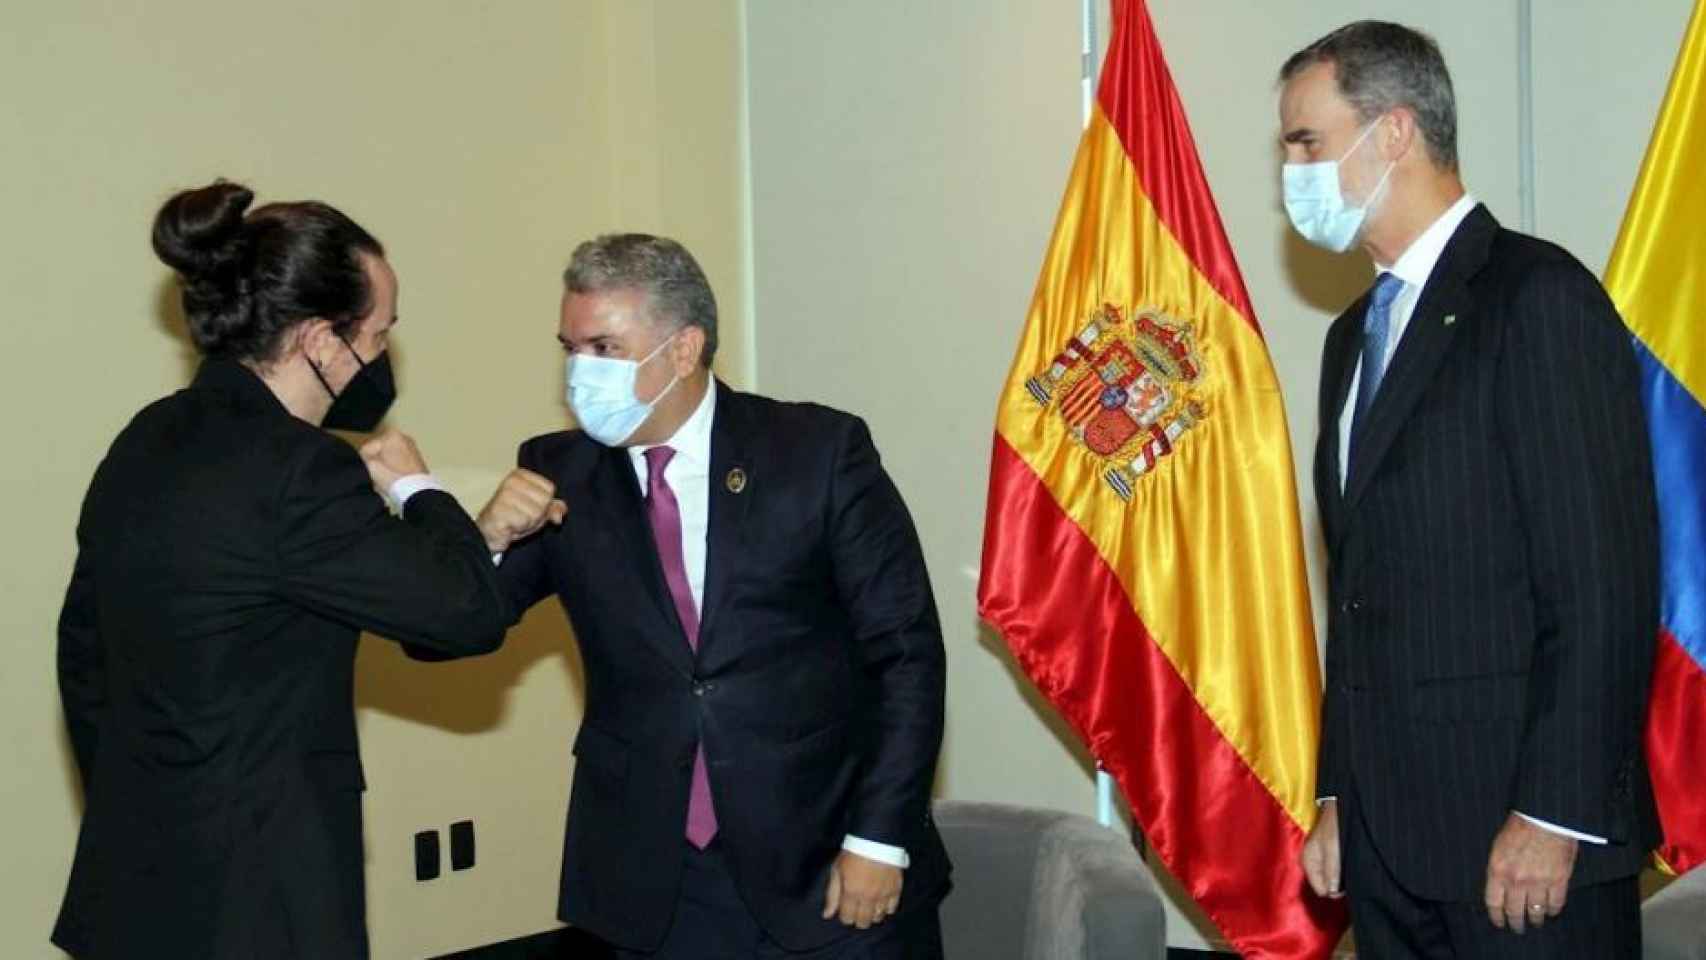 El rey Felipe VI observa mientras Pablo Iglesias saluda al presidente de Colombia, Iván Duque, en Bolivia